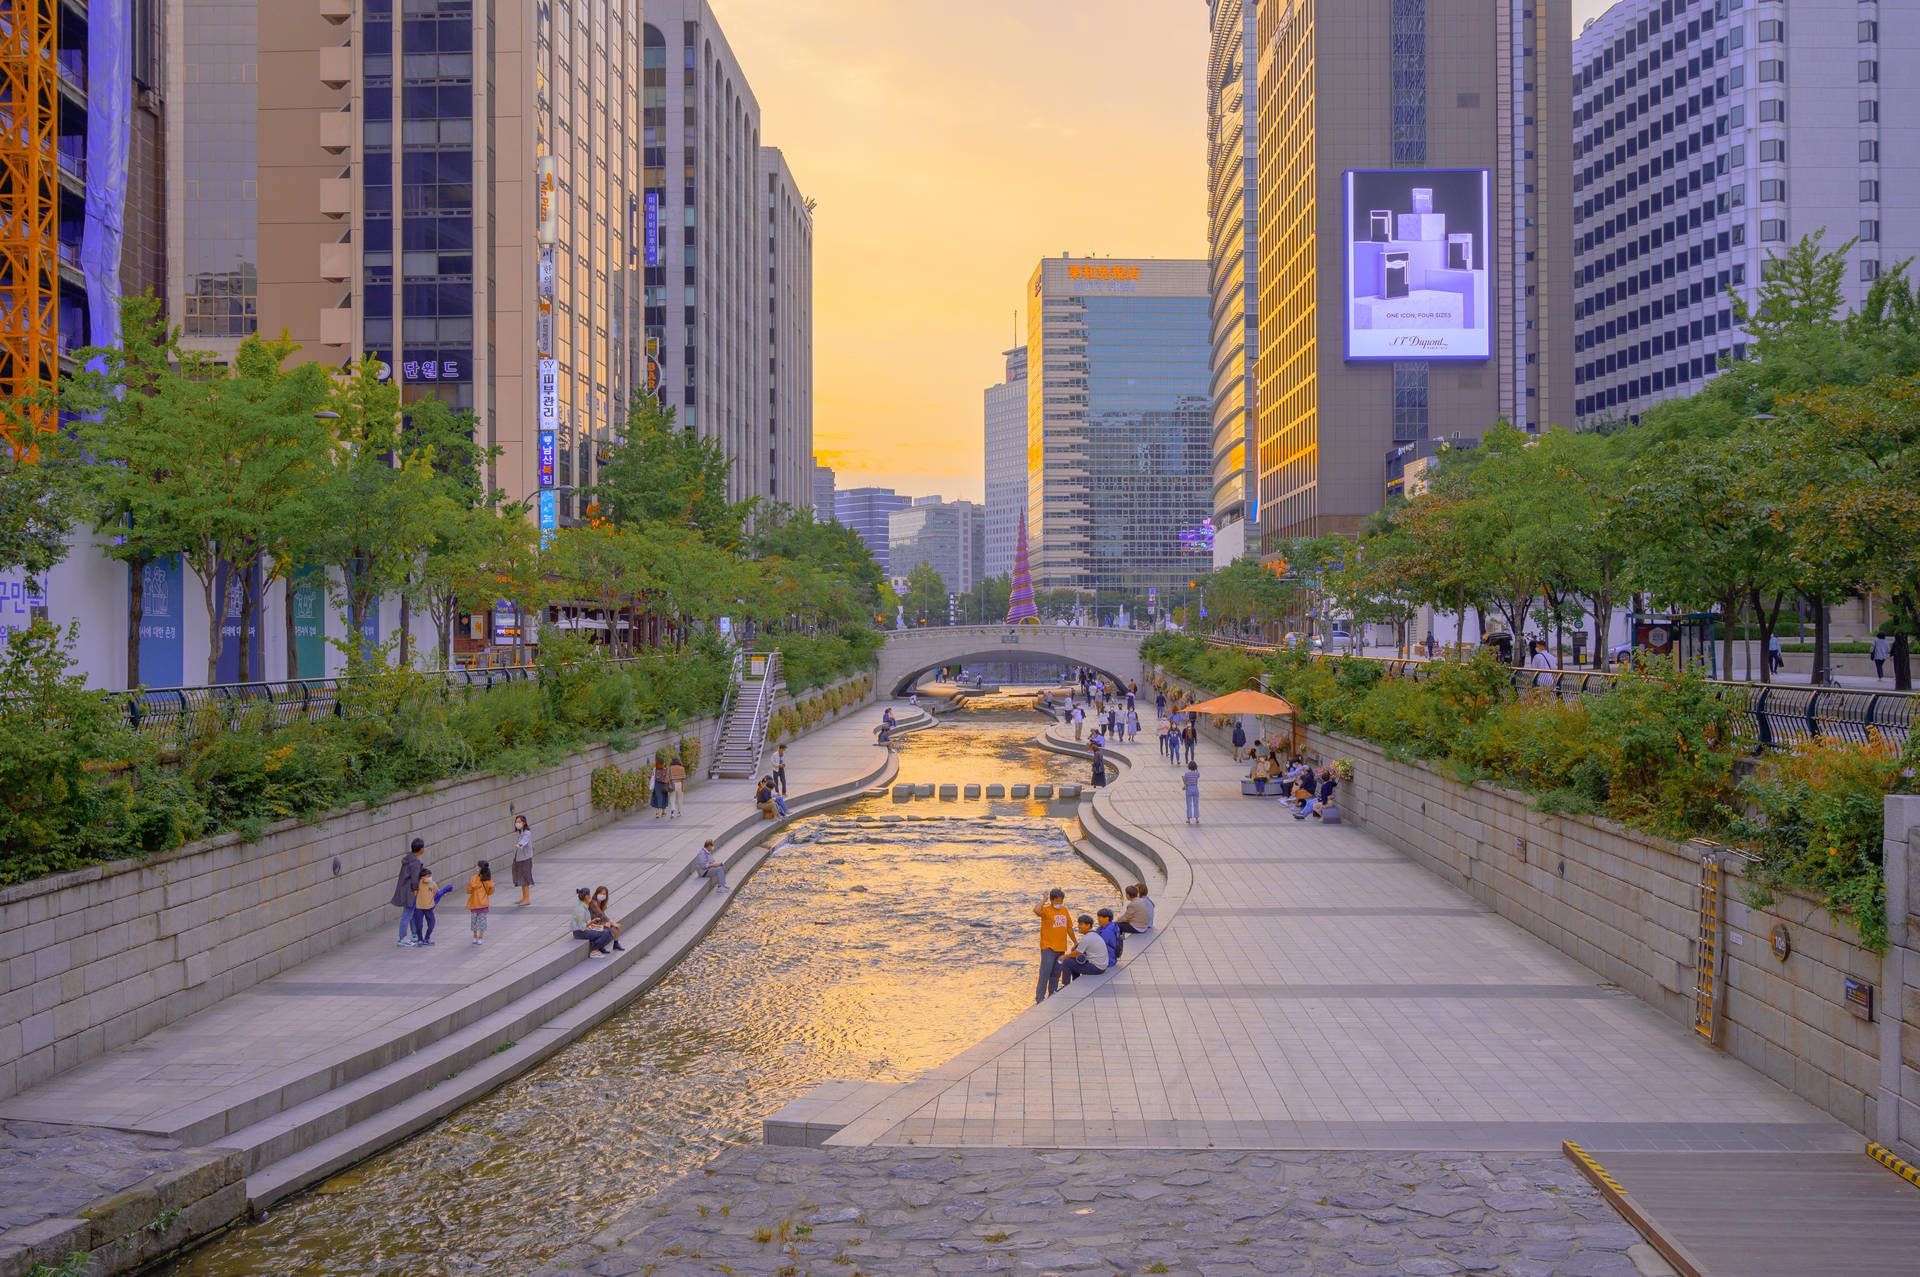 Seoul Cheonggyecheon Stream